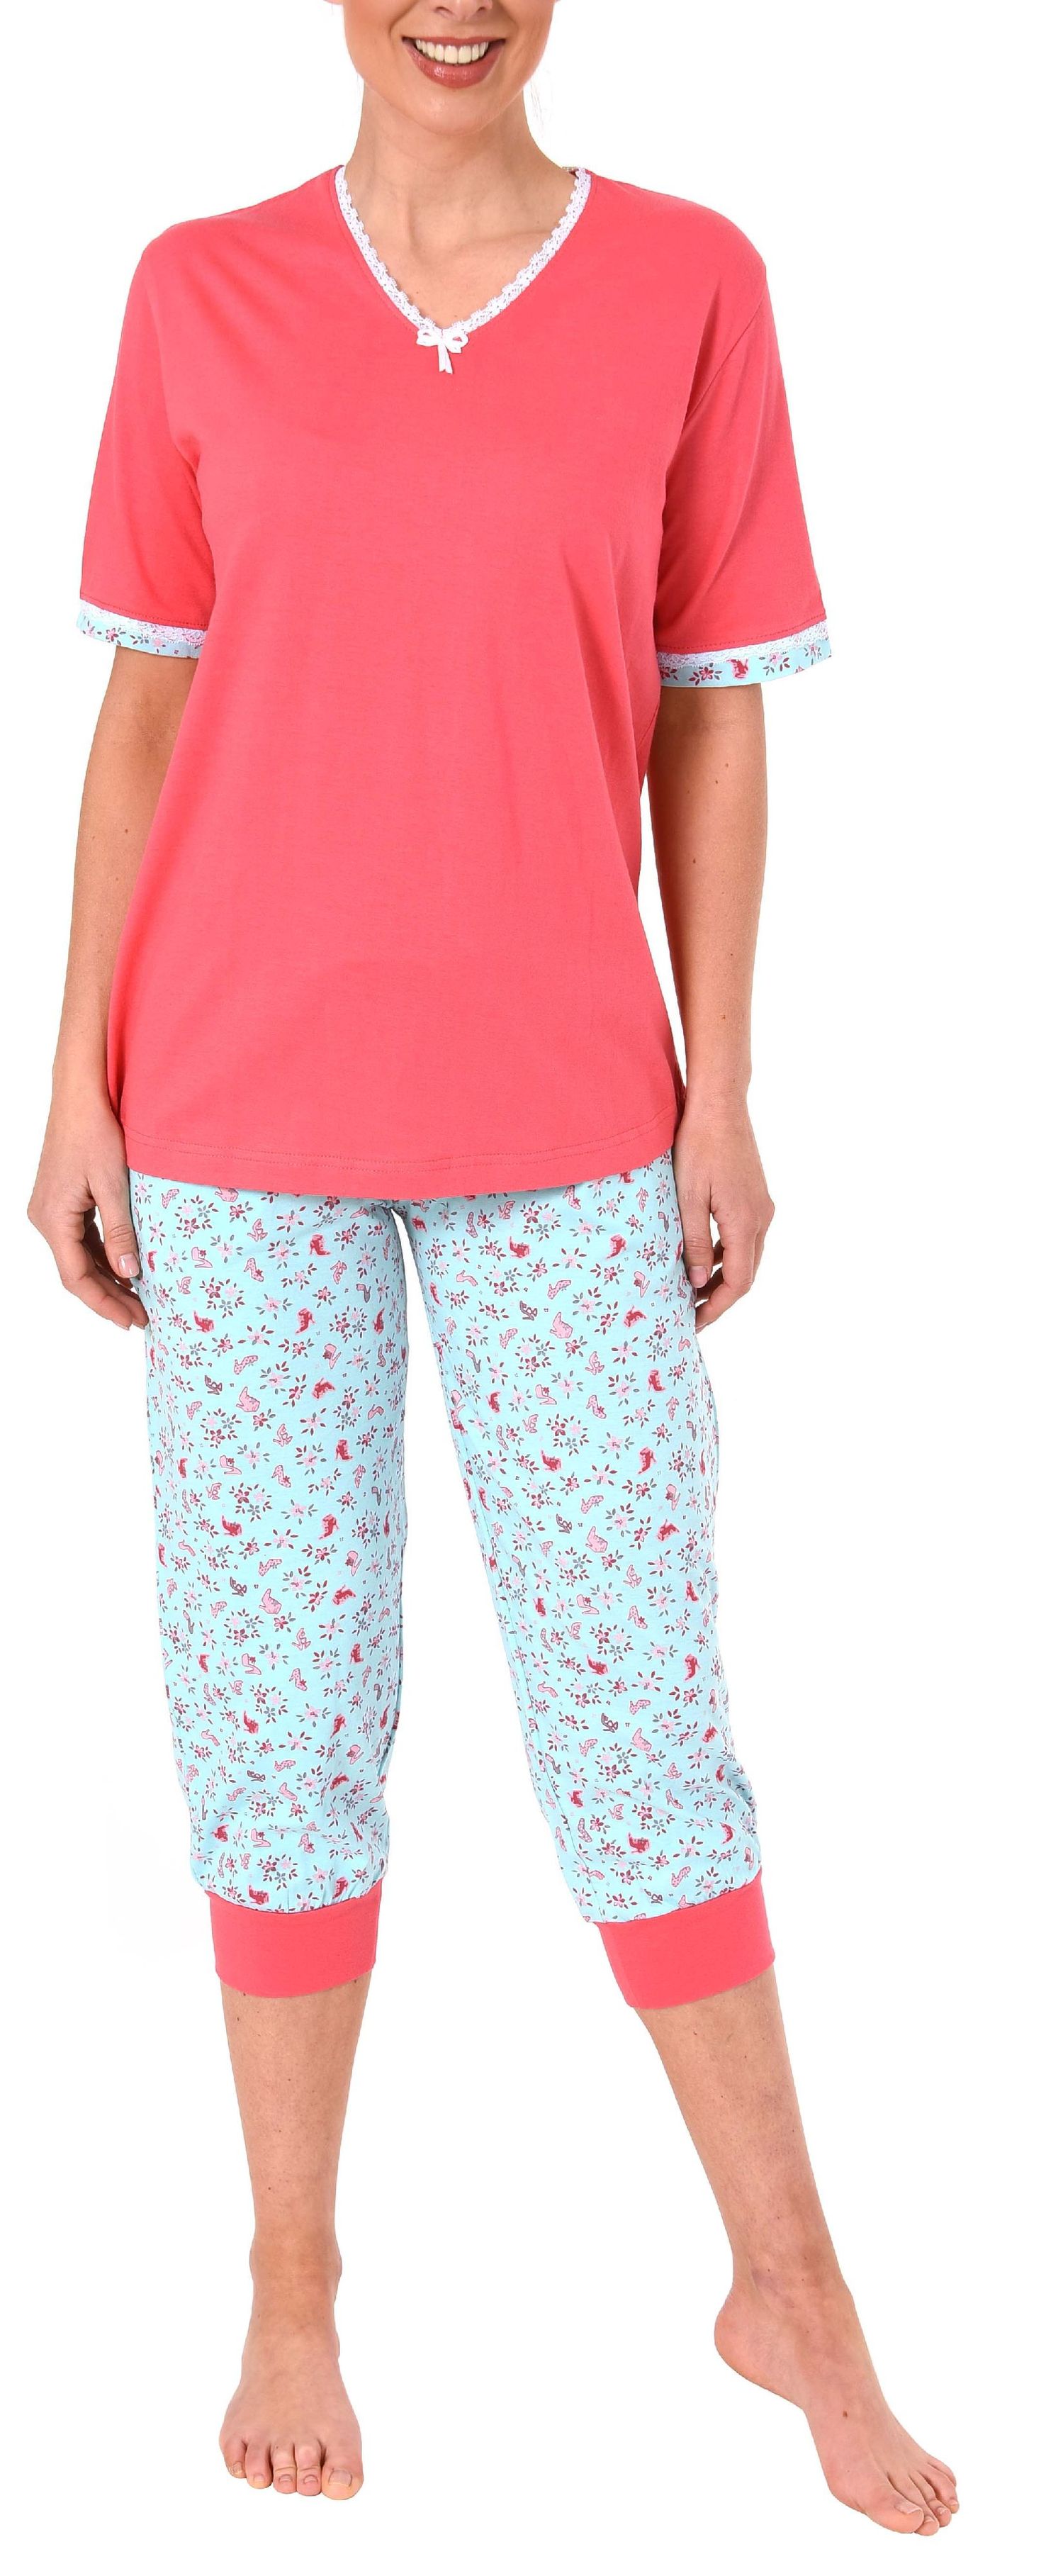 Normann Damen Capri-Pyjama kurzarm – auch in Übergrössen erhältlich bis Grösse 60/62 - 191 204 90 214